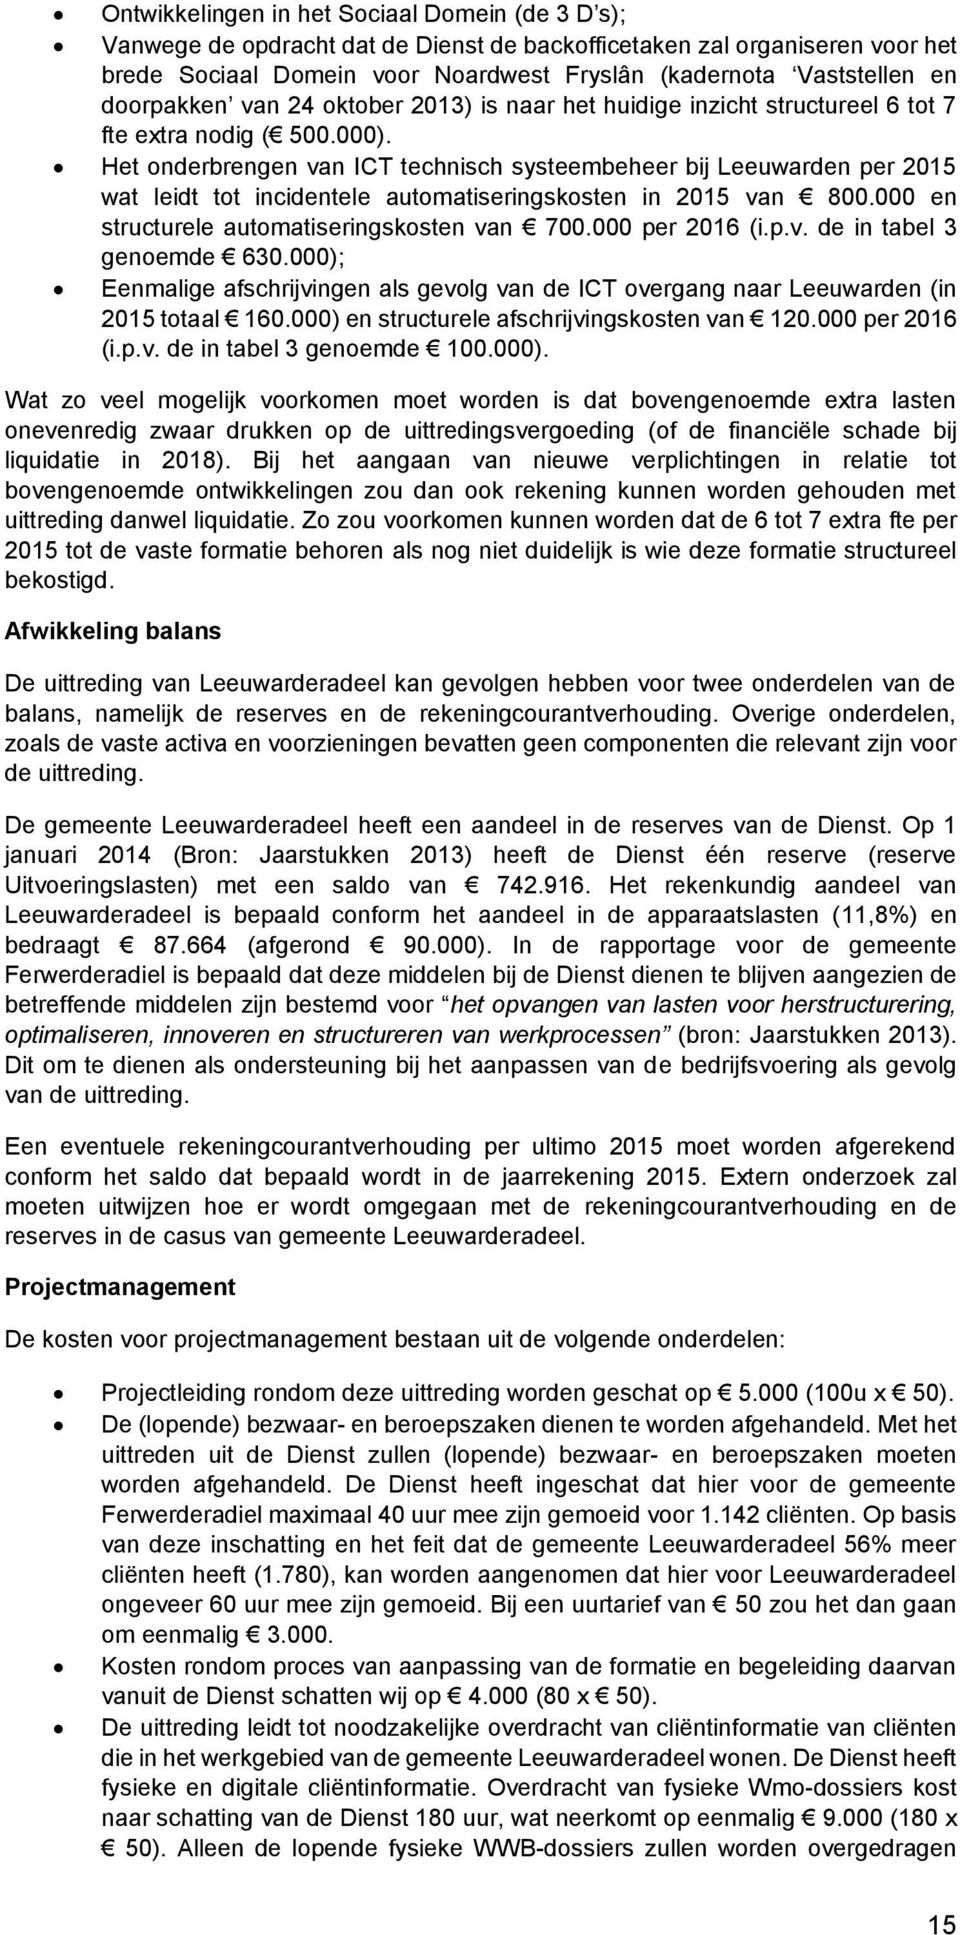 Het onderbrengen van ICT technisch systeembeheer bij Leeuwarden per 2015 wat leidt tot incidentele automatiseringskosten in 2015 van 800.000 en structurele automatiseringskosten van 700.